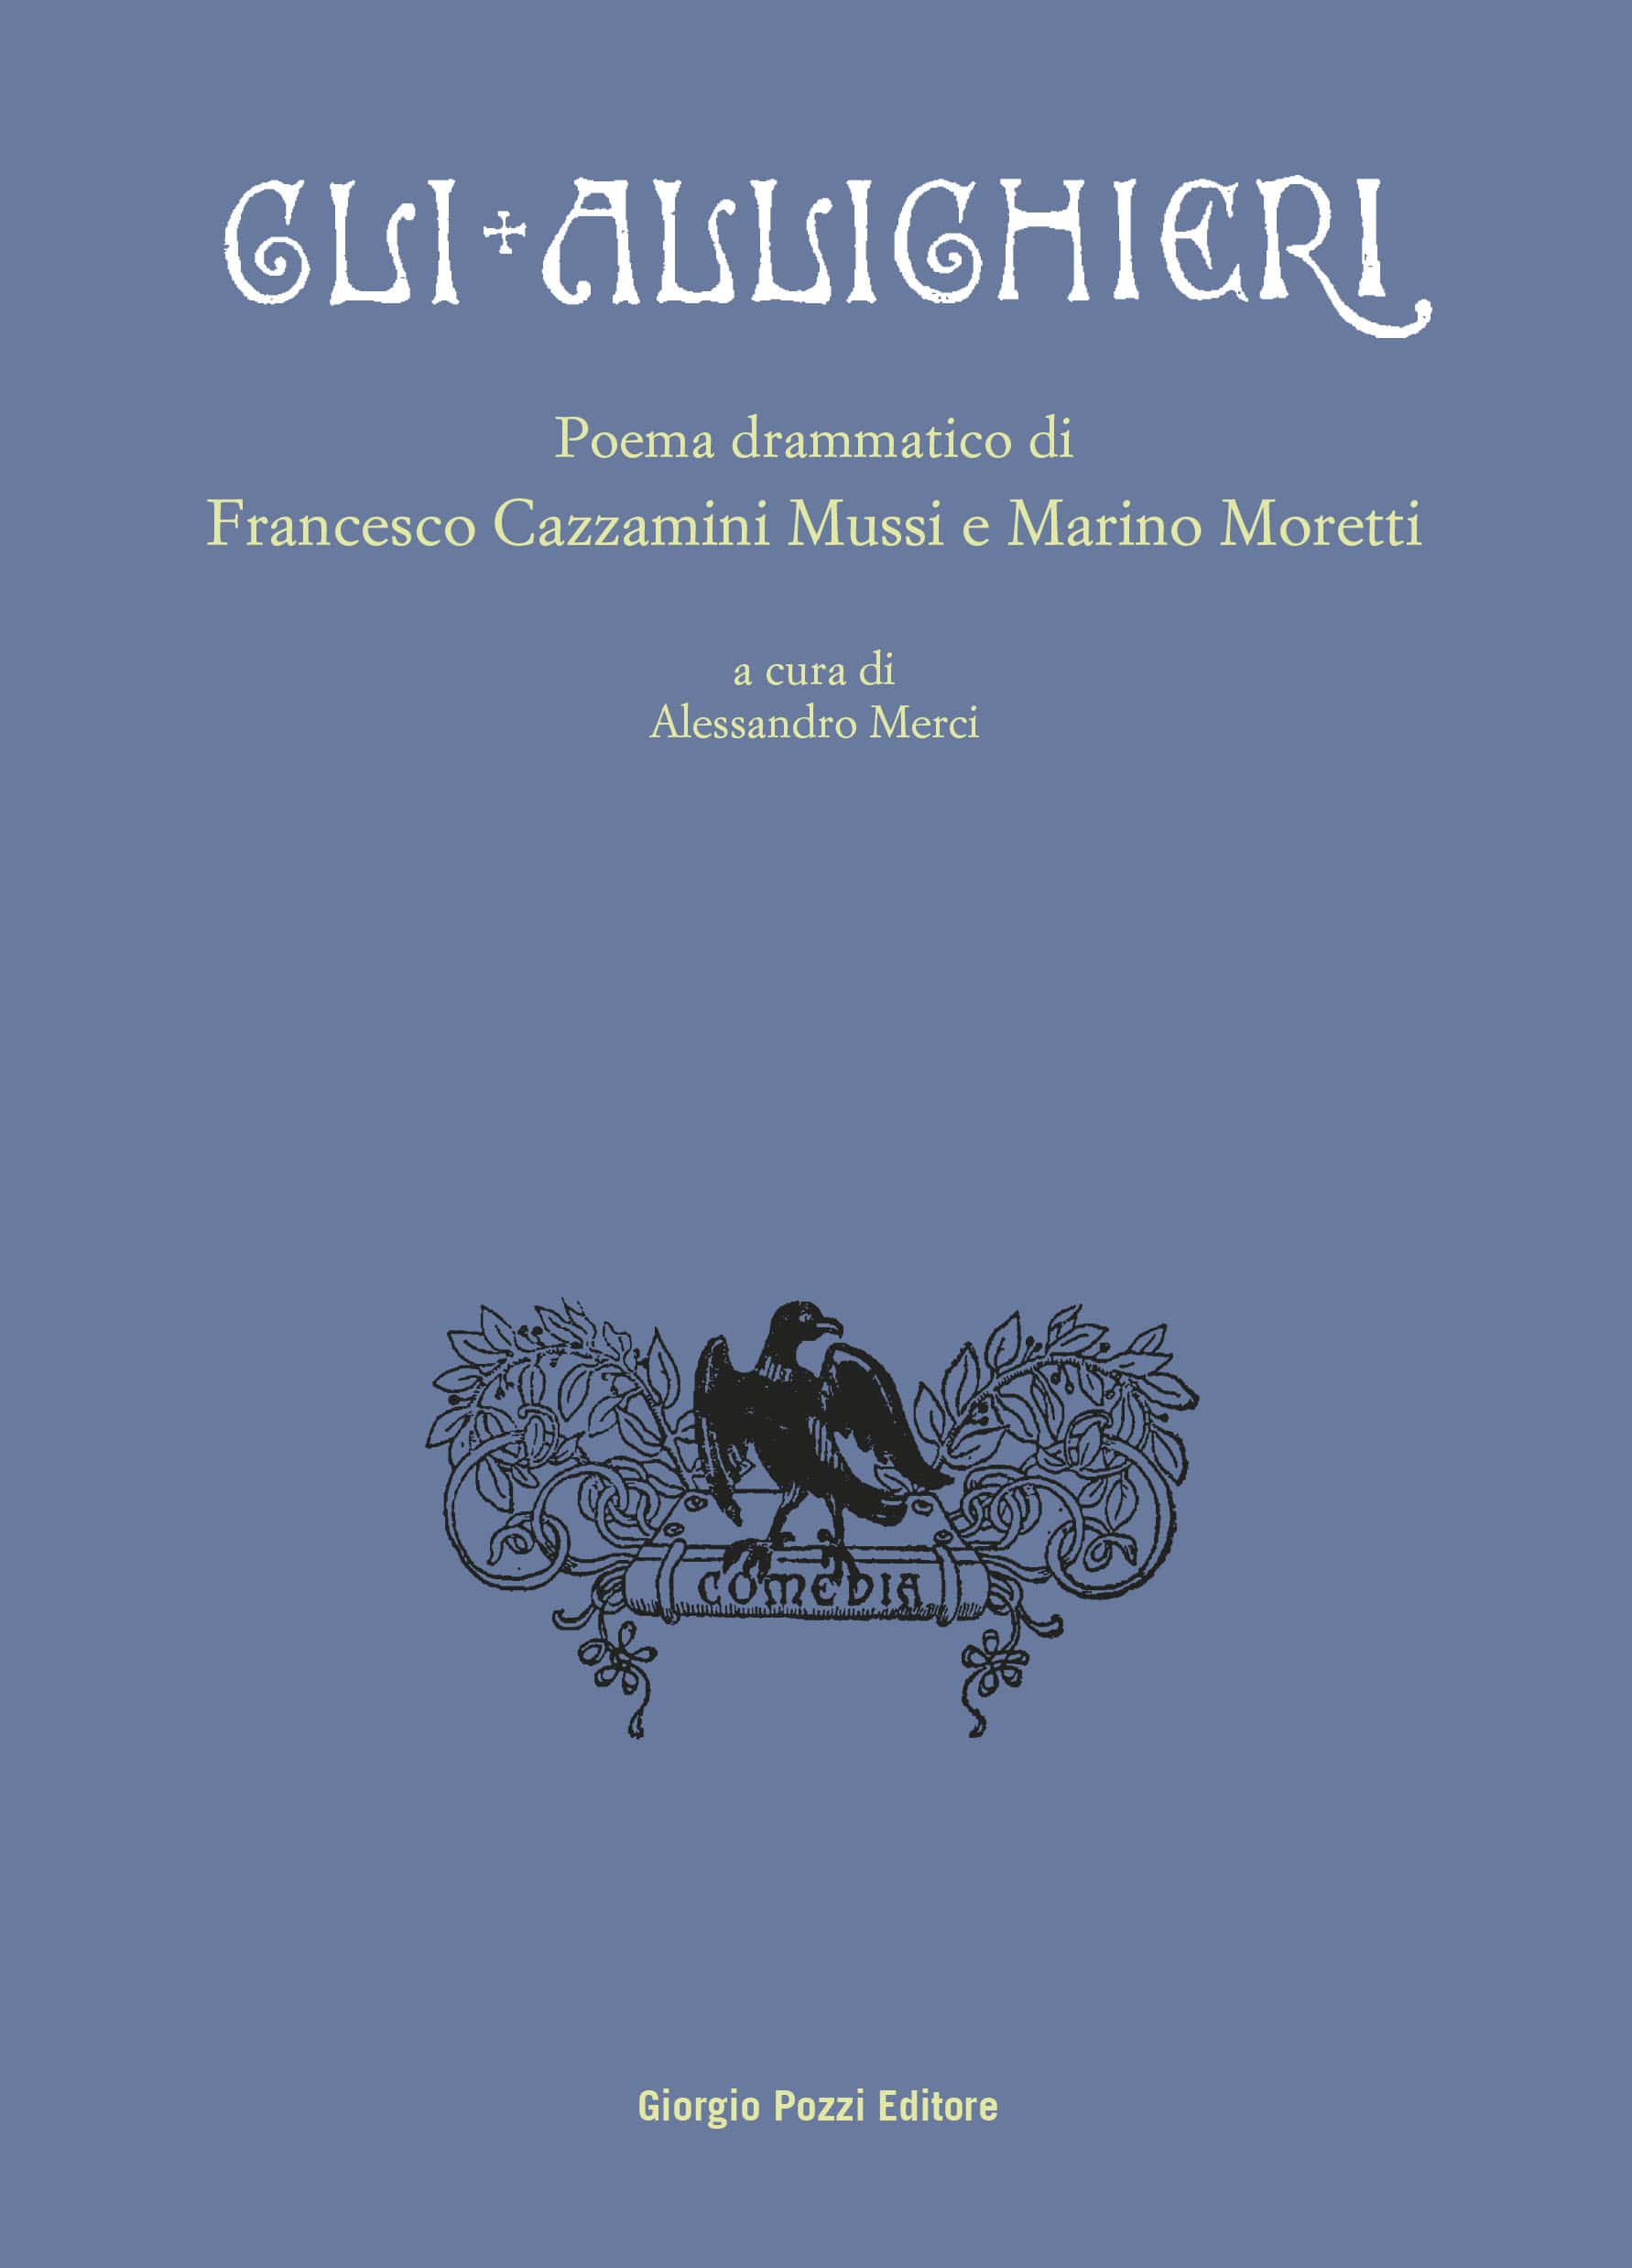 Gli Allighieri. Poema drammatico di Francesco Cazzamini Mussi e Marino Moretti